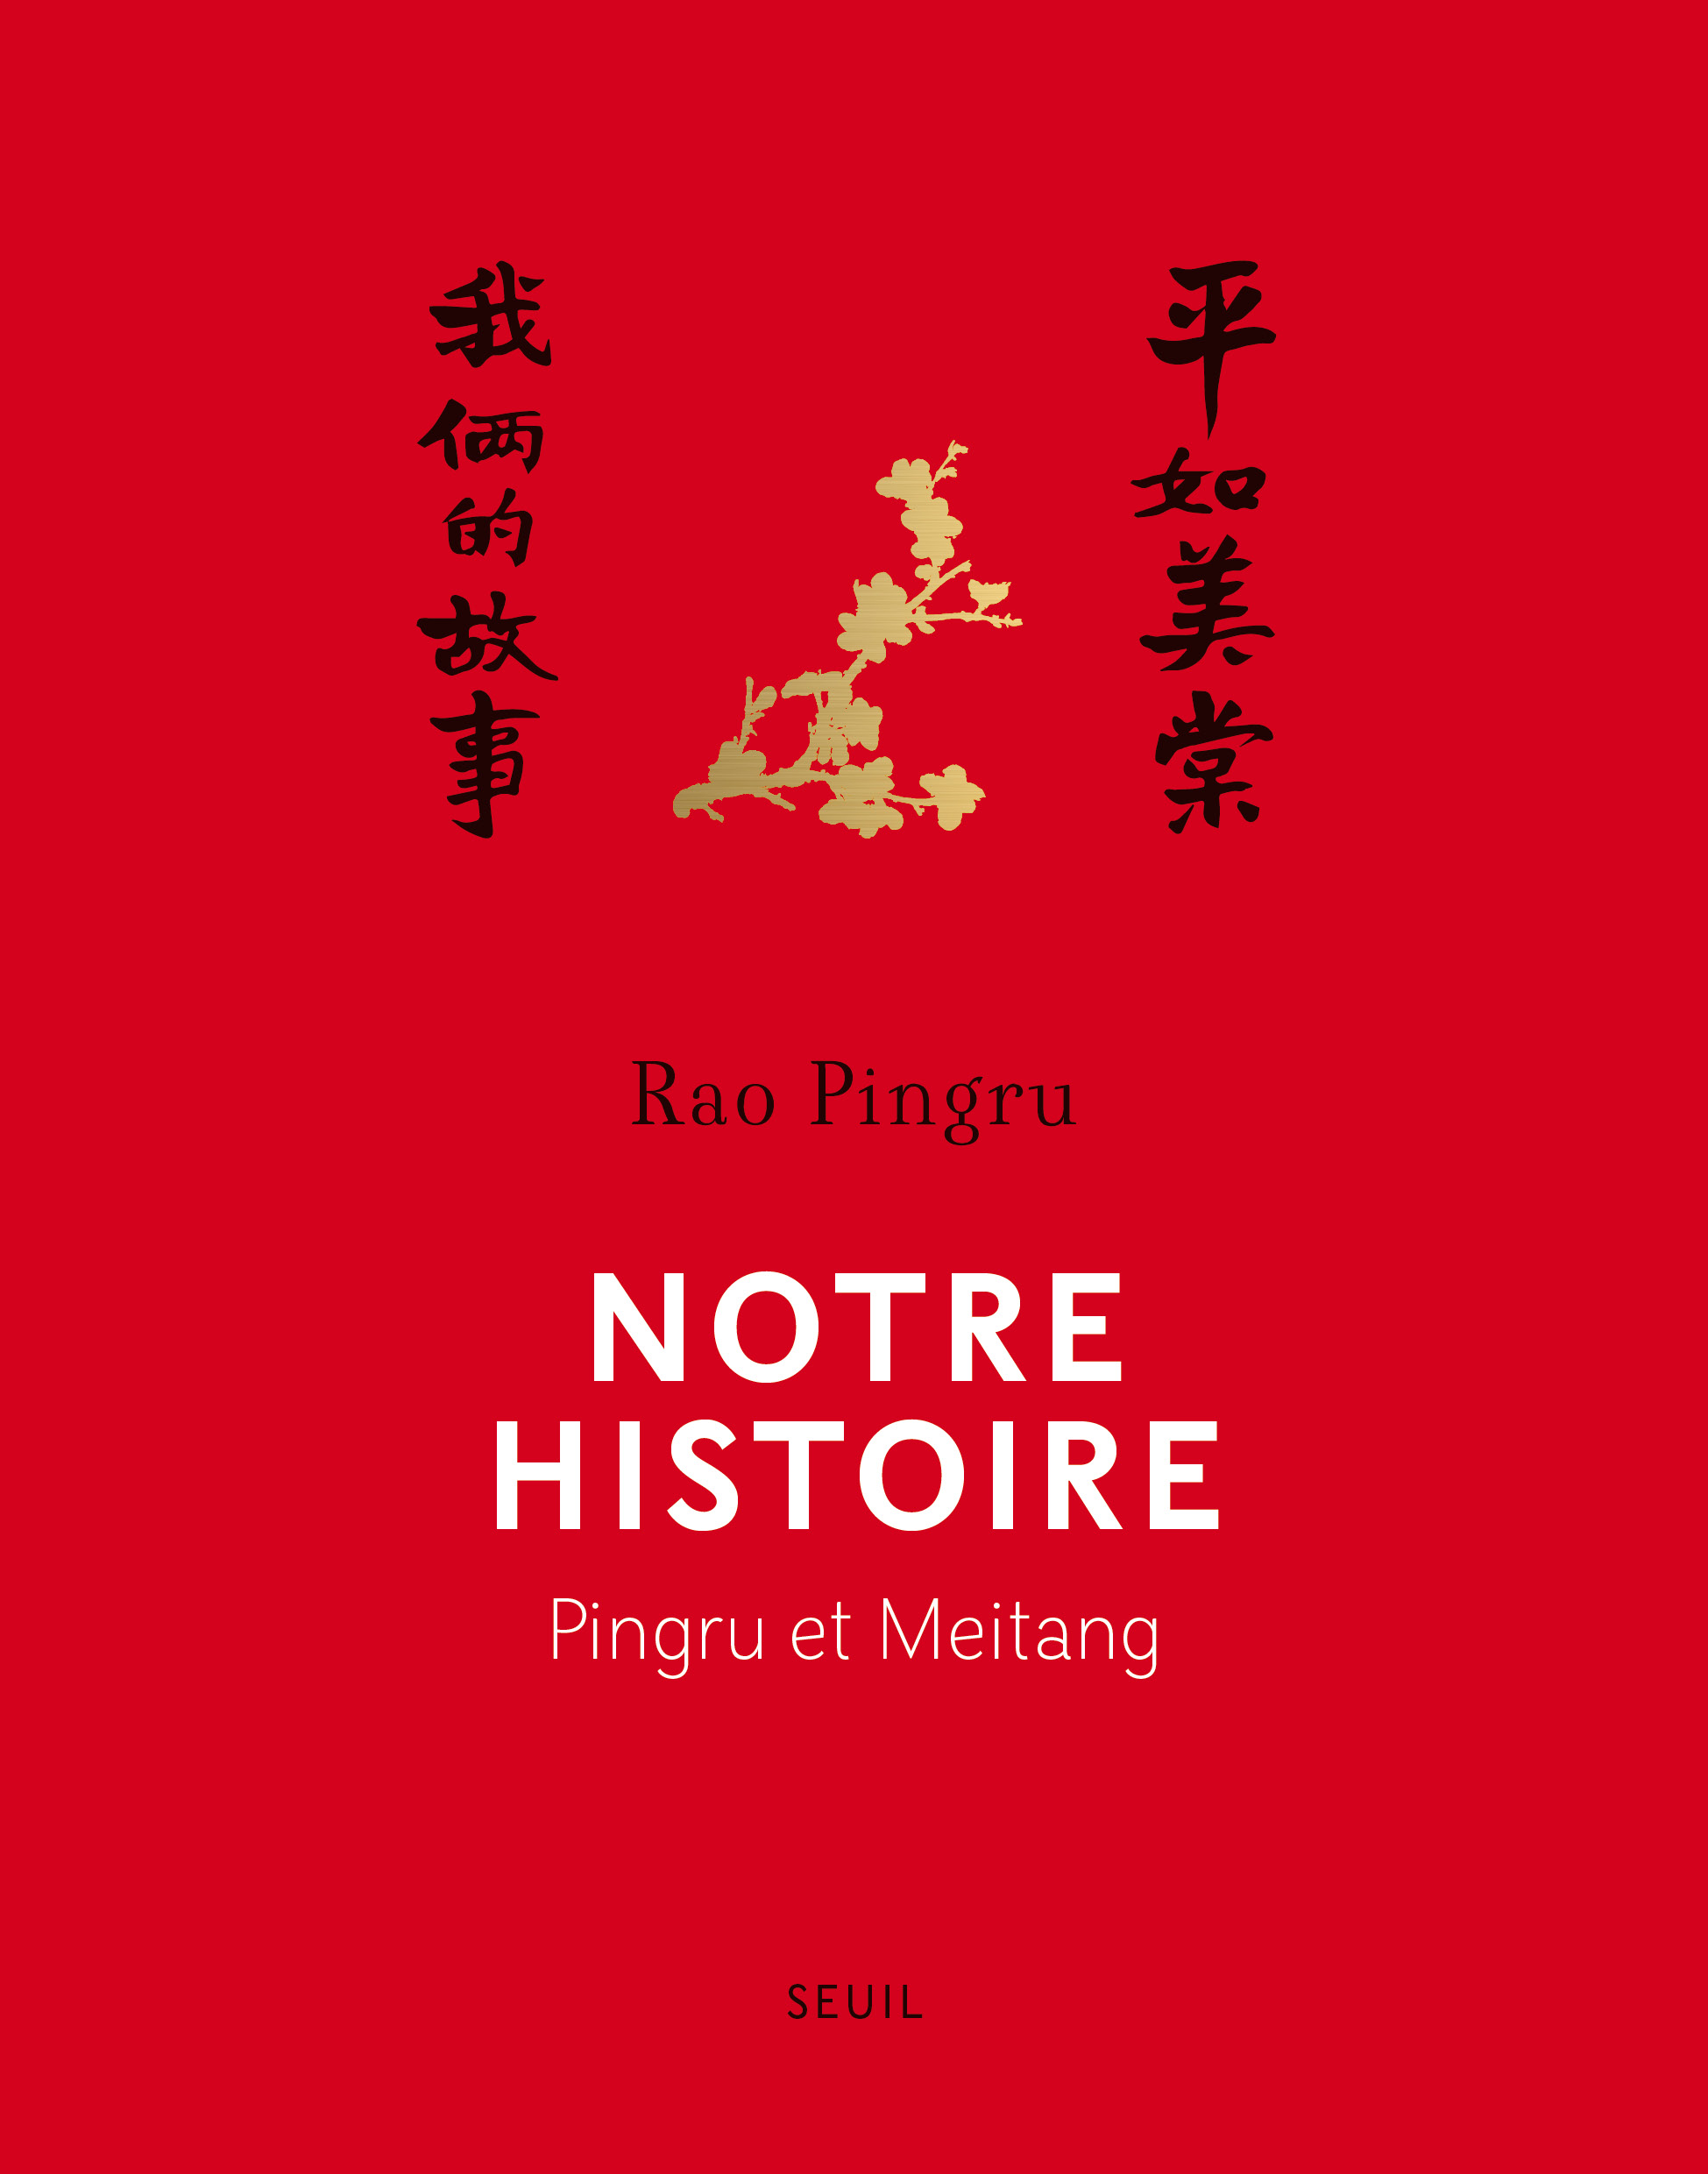 Notre histoire Pingru et Meitang de Rao Pingru est sorti aux éditions du Seuil.